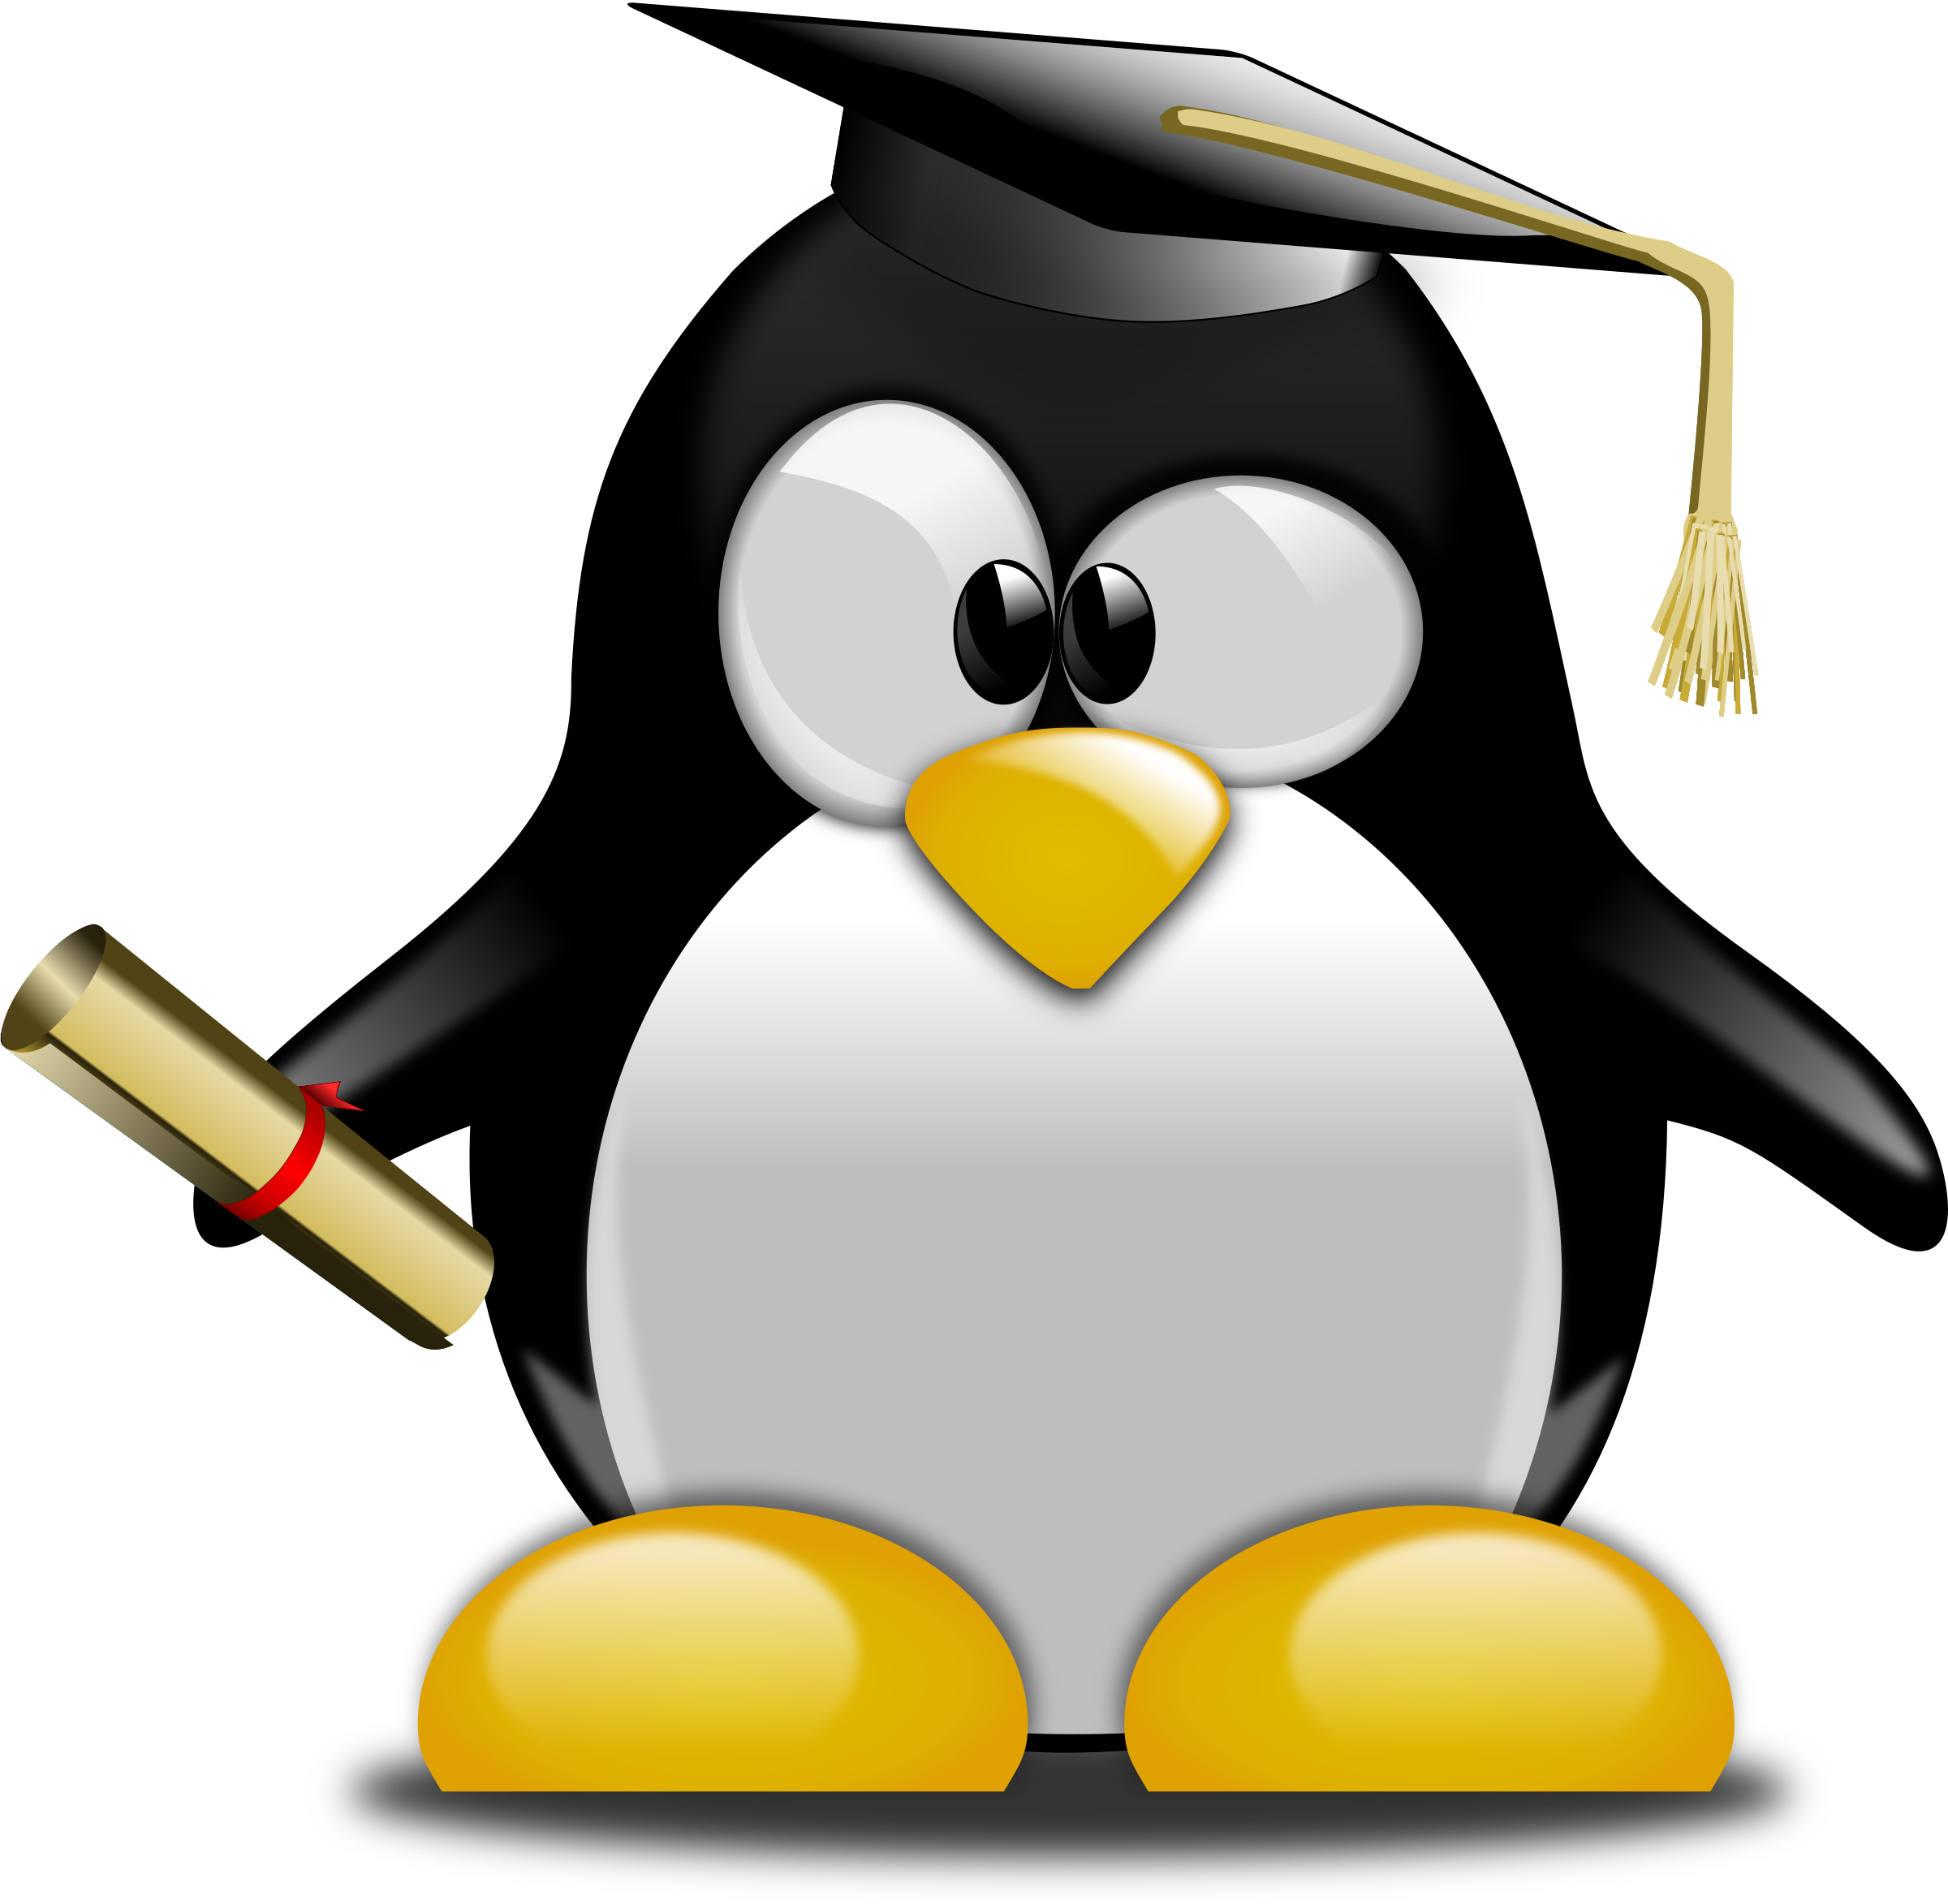 Bmp picture. Пингвин линукс. Школа пингвинов. Сердитый Пингвин. Рисунки в формате bmp.